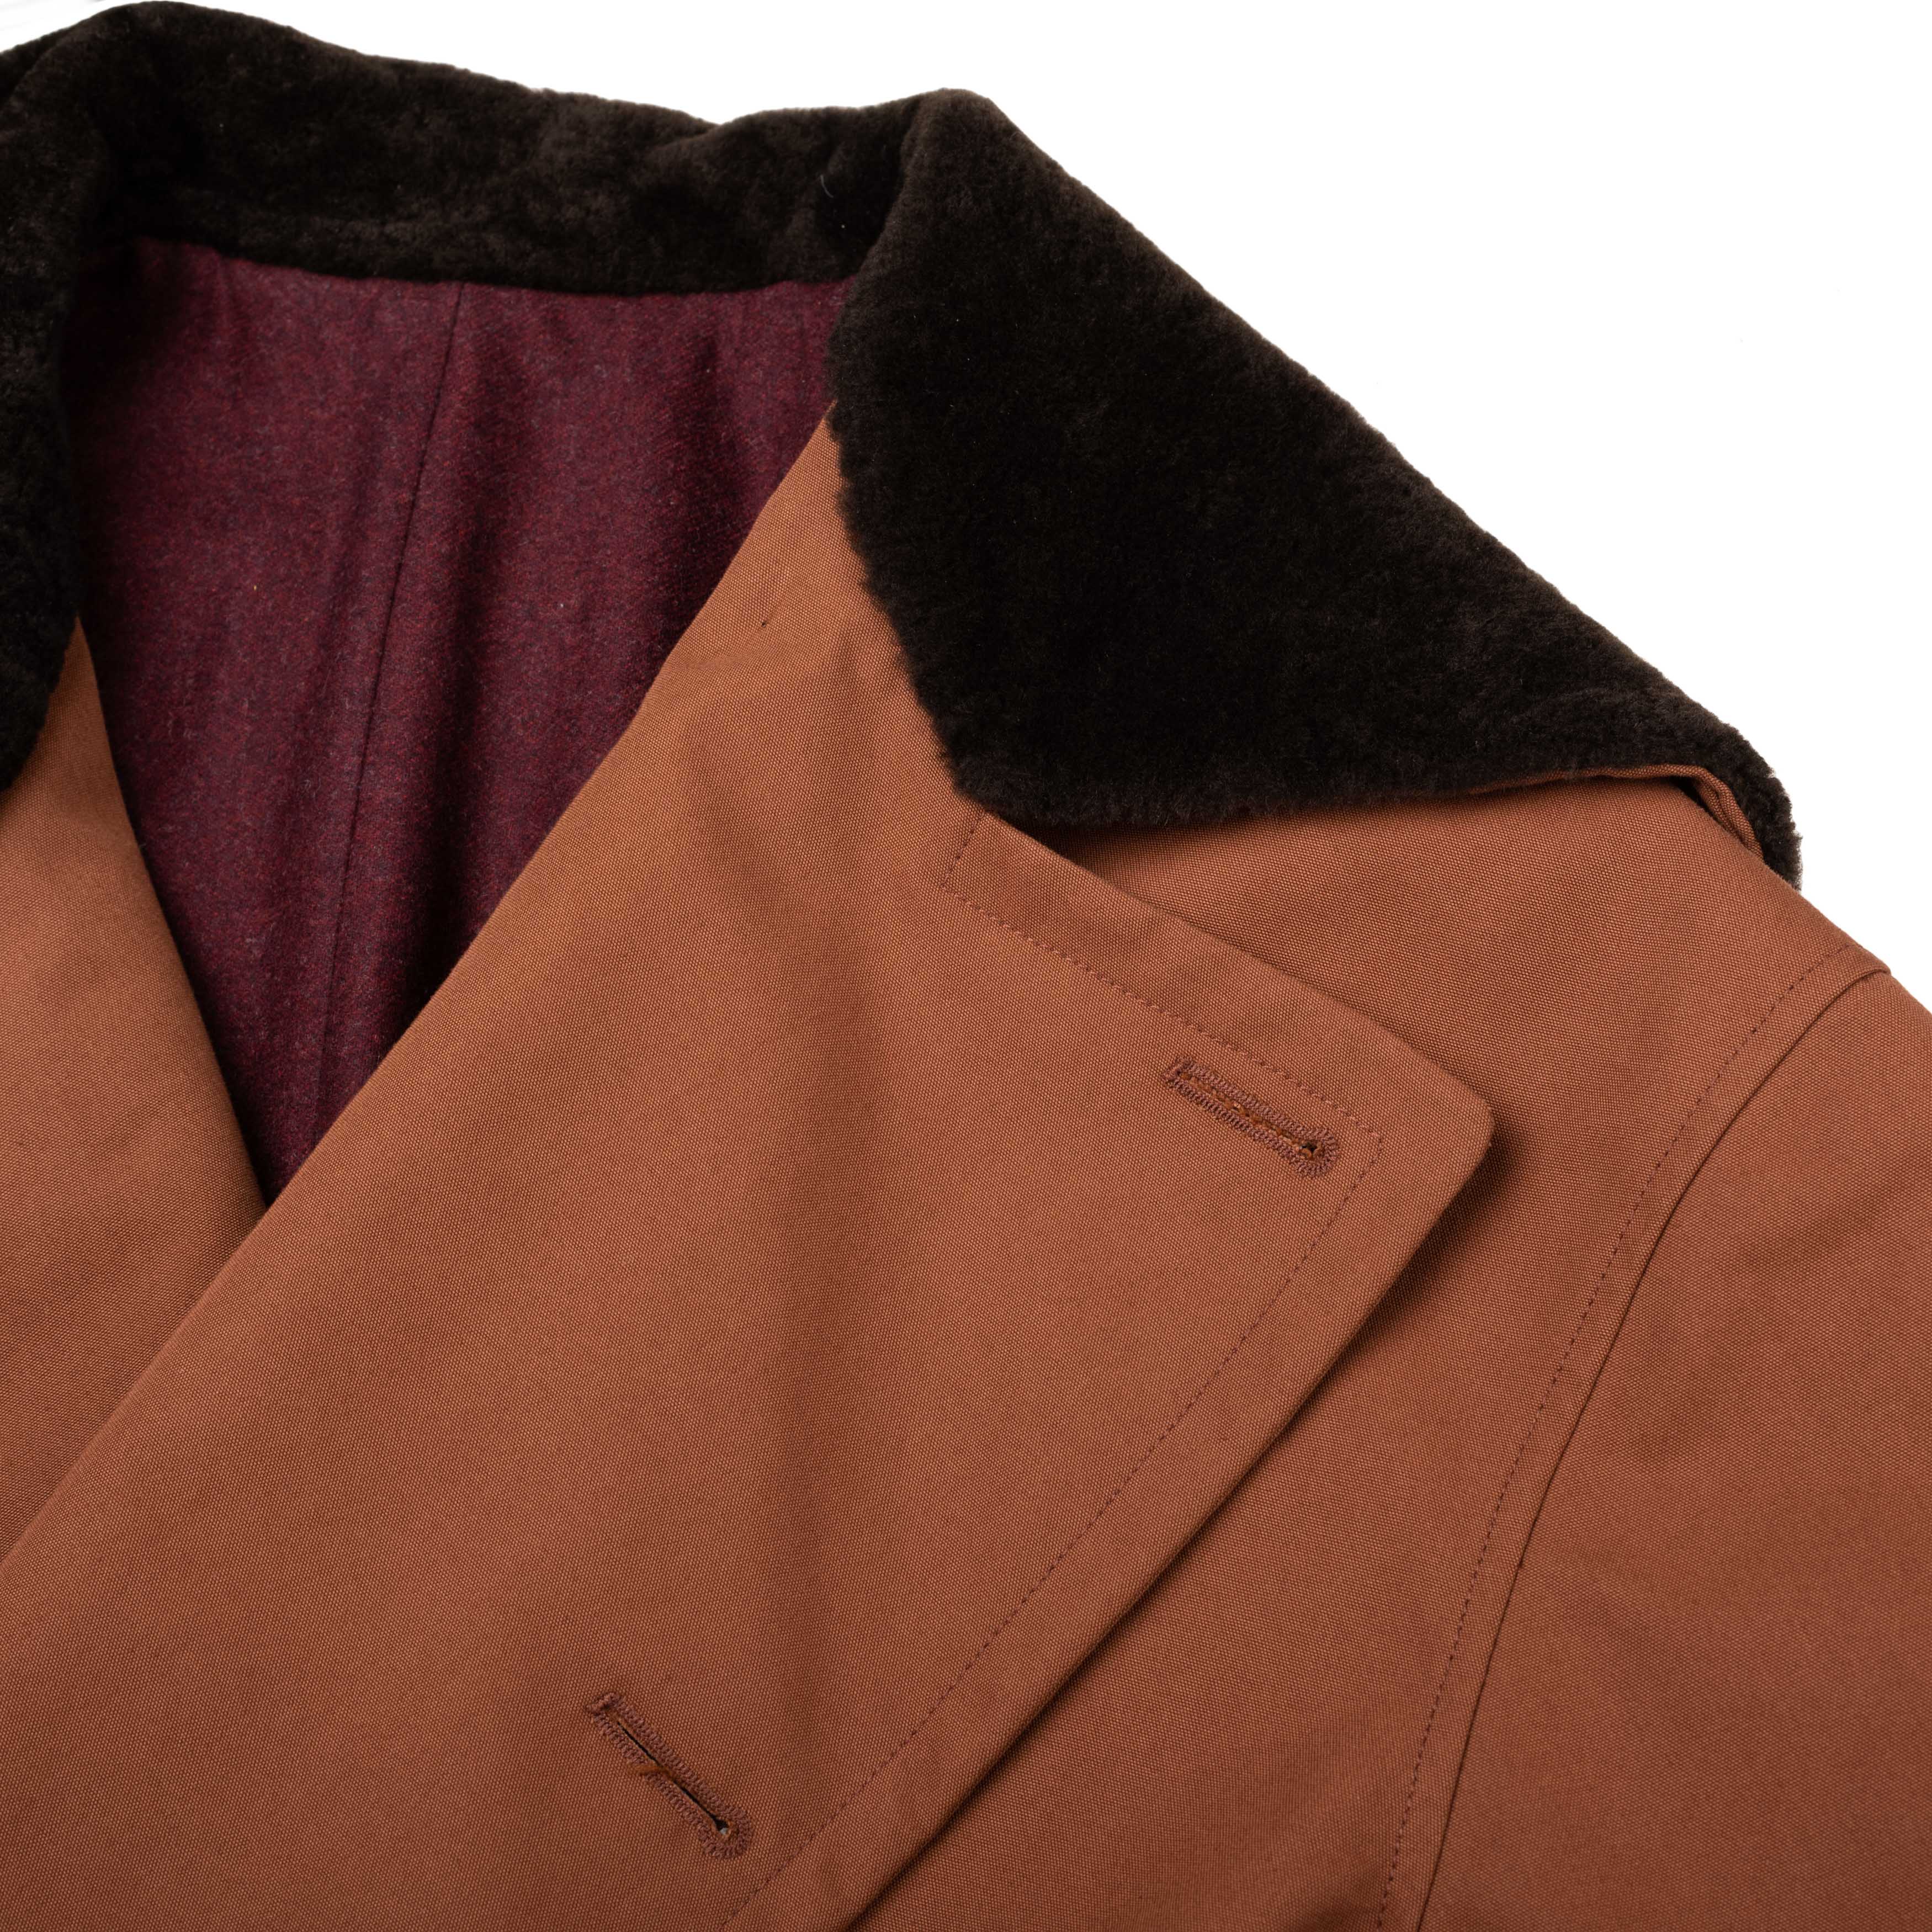 BOGLIOLI Milano "Wear" Brown Cotton Blend Pea Coat NEW US 48 / 4XL BOGLIOLI